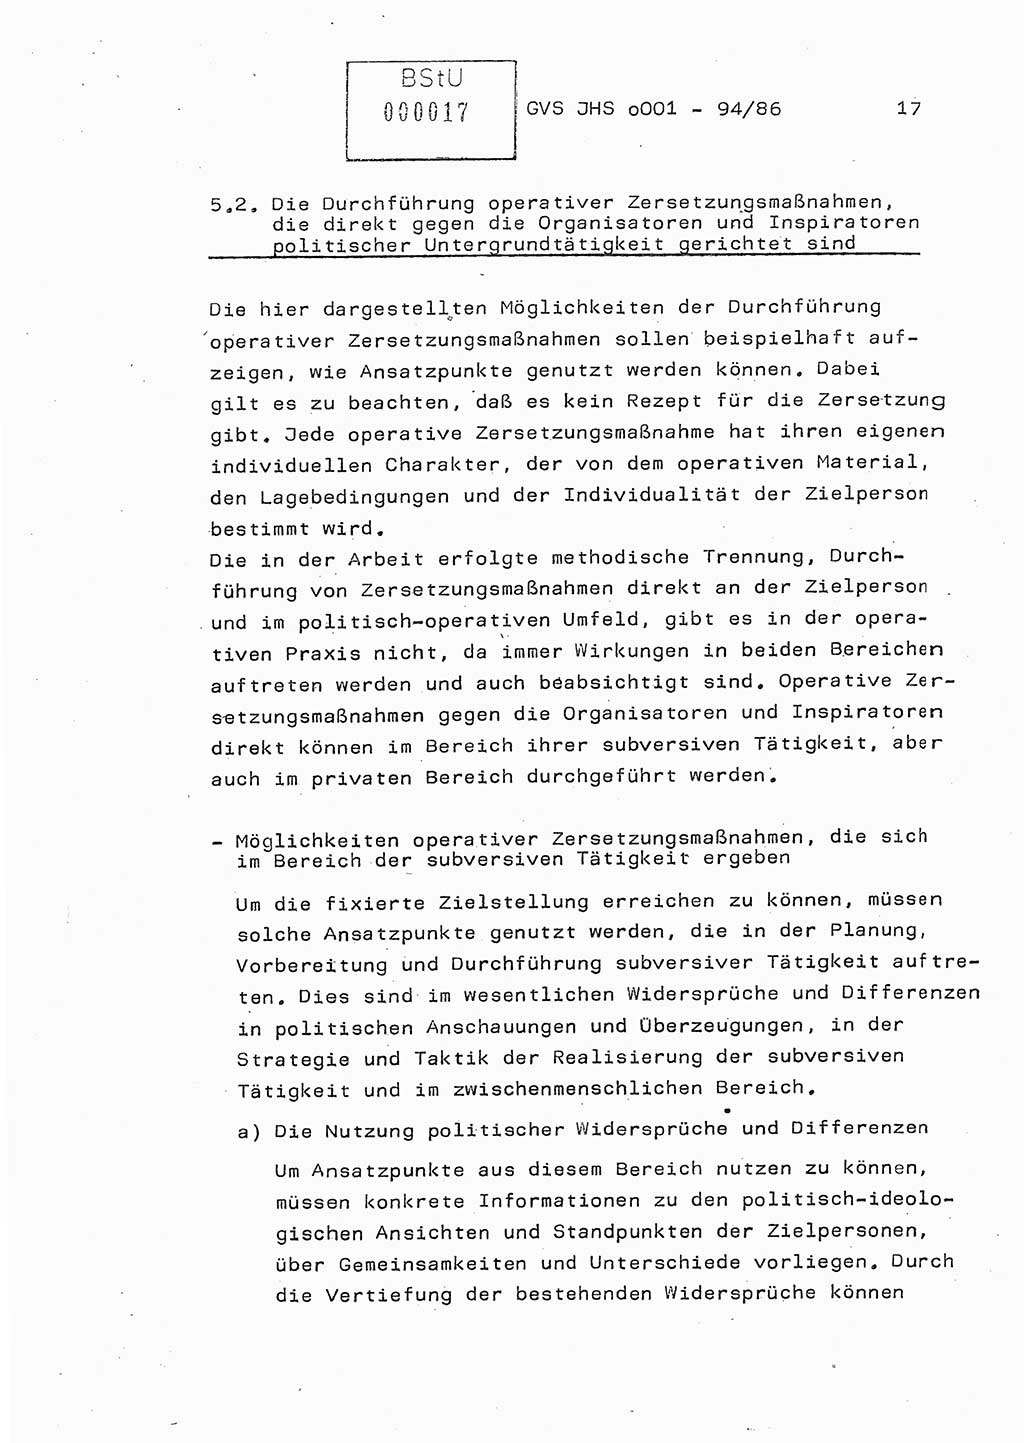 Diplomarbeit Oberleutnant Volkmar Pechmann (HA ⅩⅩ/5), Ministerium für Staatssicherheit (MfS) [Deutsche Demokratische Republik (DDR)], Juristische Hochschule (JHS), Geheime Verschlußsache (GVS) o001-94/86, Potsdam 1986, Blatt 17 (Dipl.-Arb. MfS DDR JHS GVS o001-94/86 1986, Bl. 17)